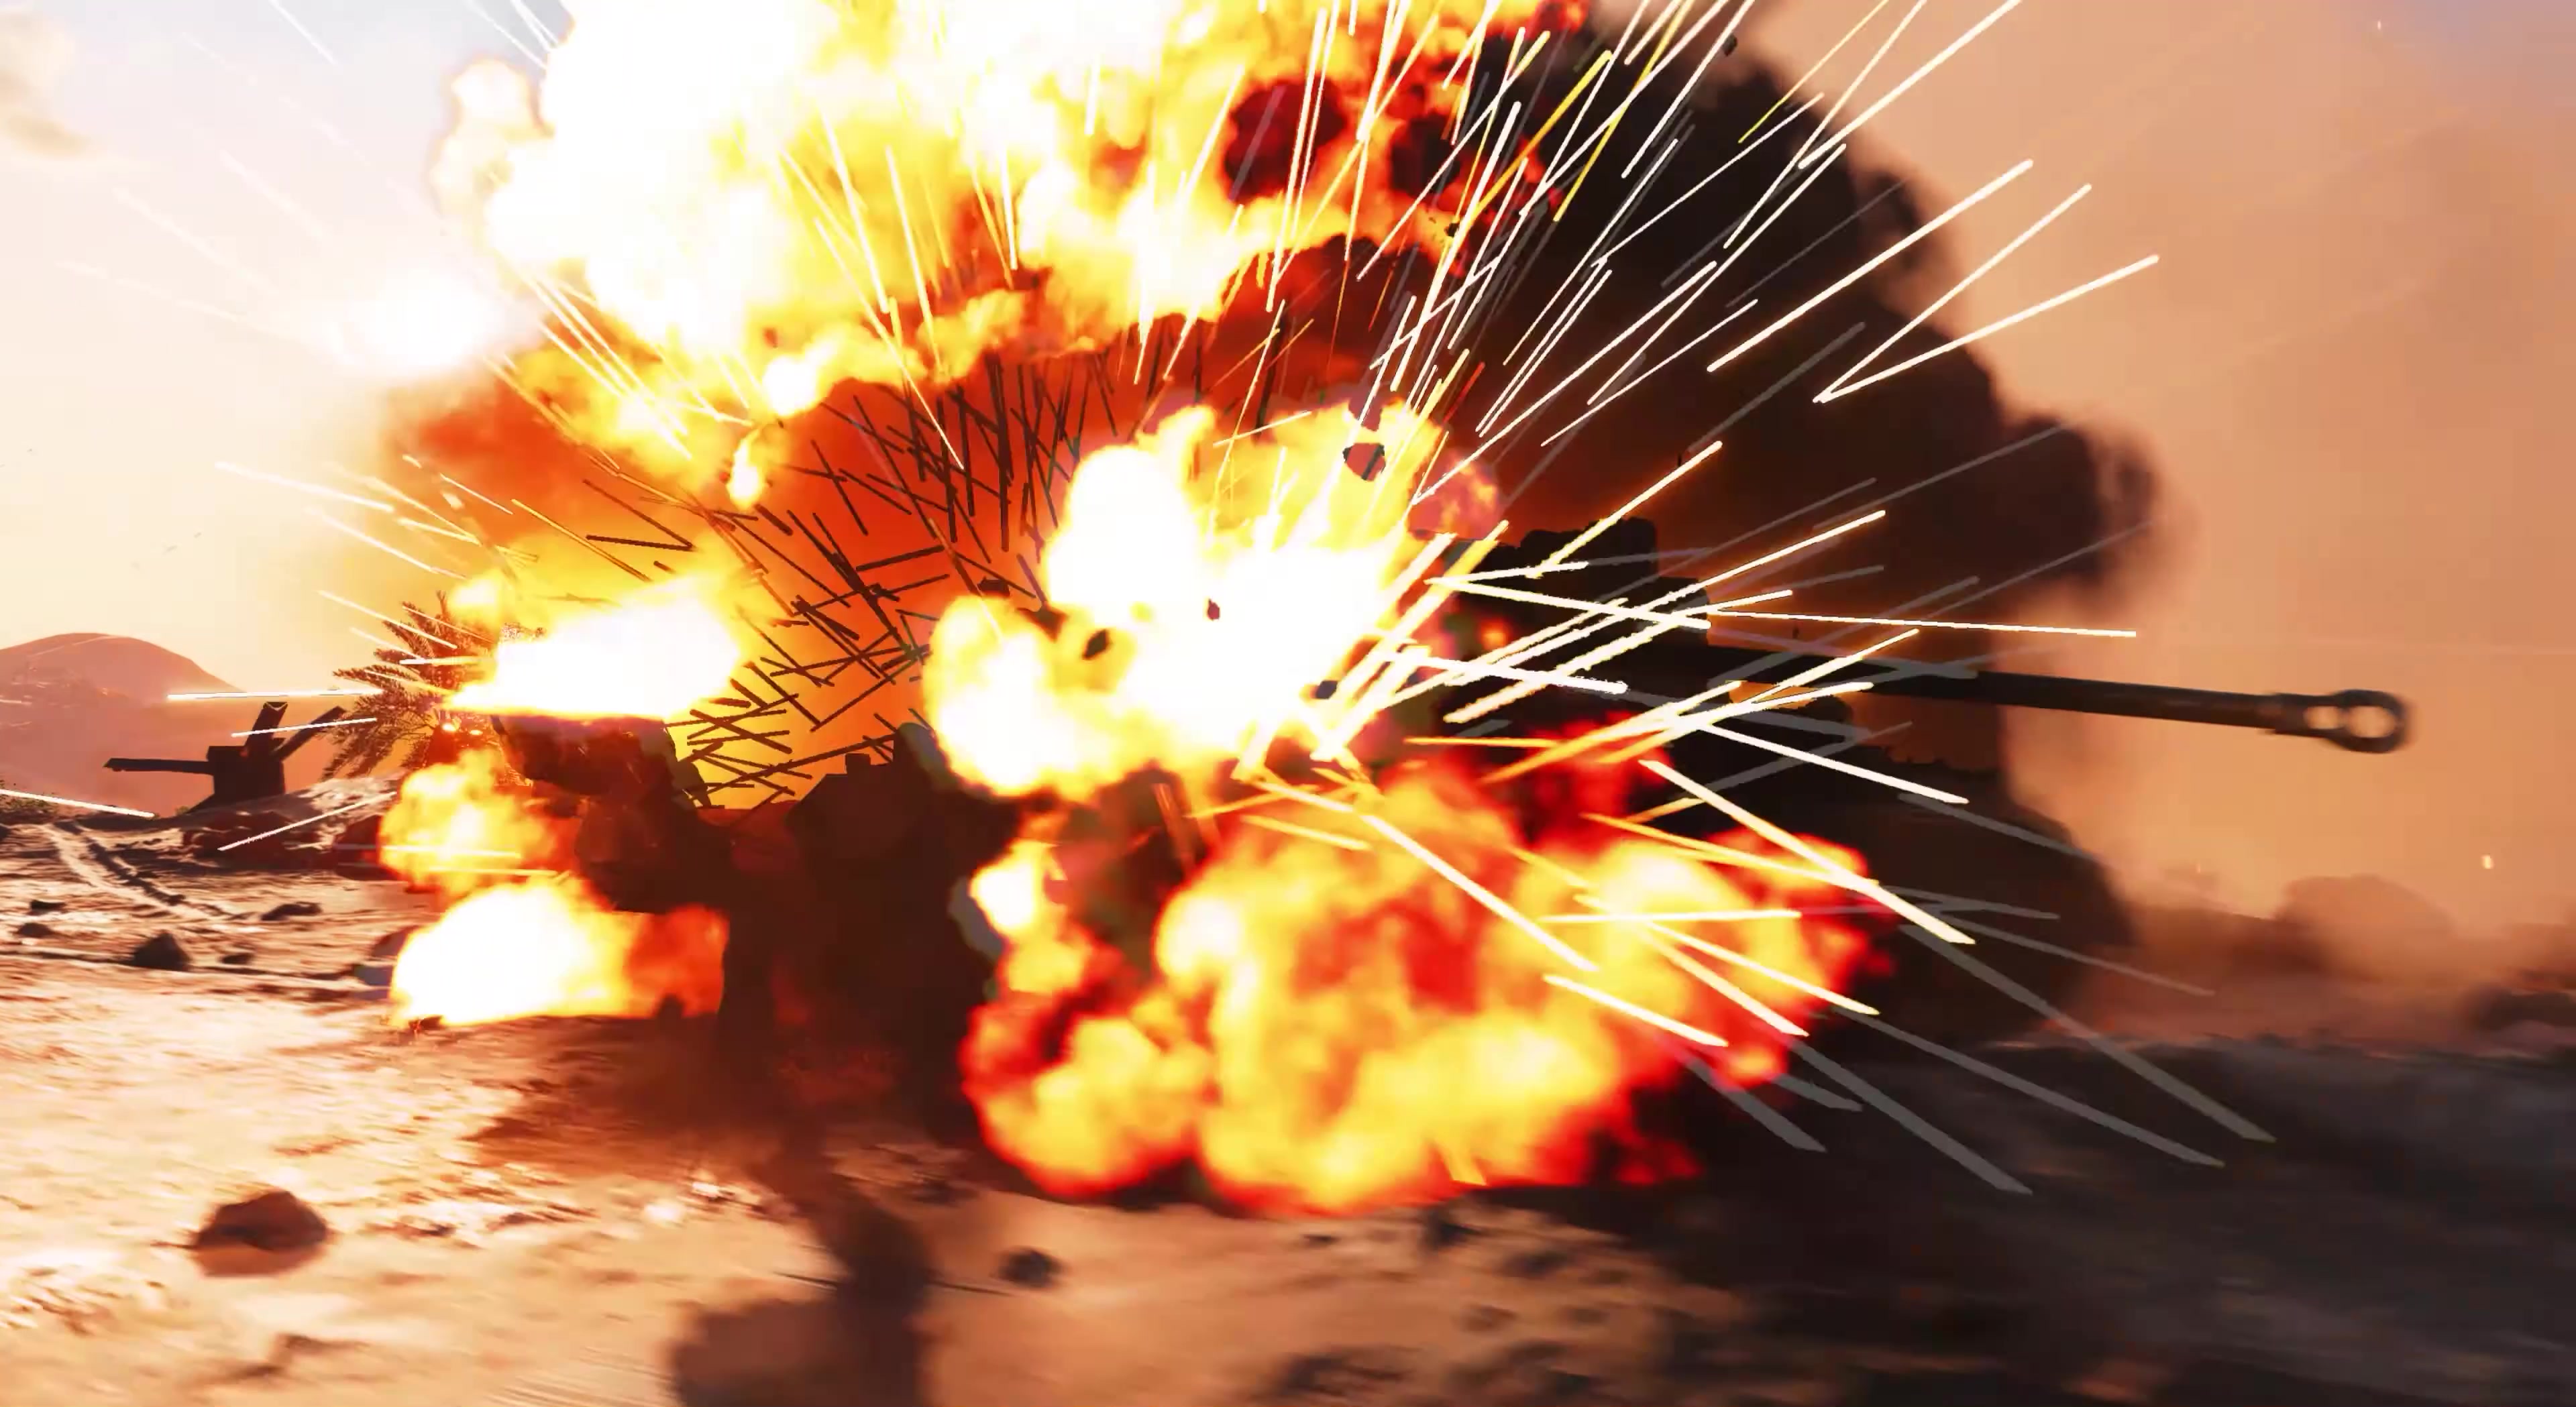 枪林弹雨炮火连天激烈交战战争动画视频素材